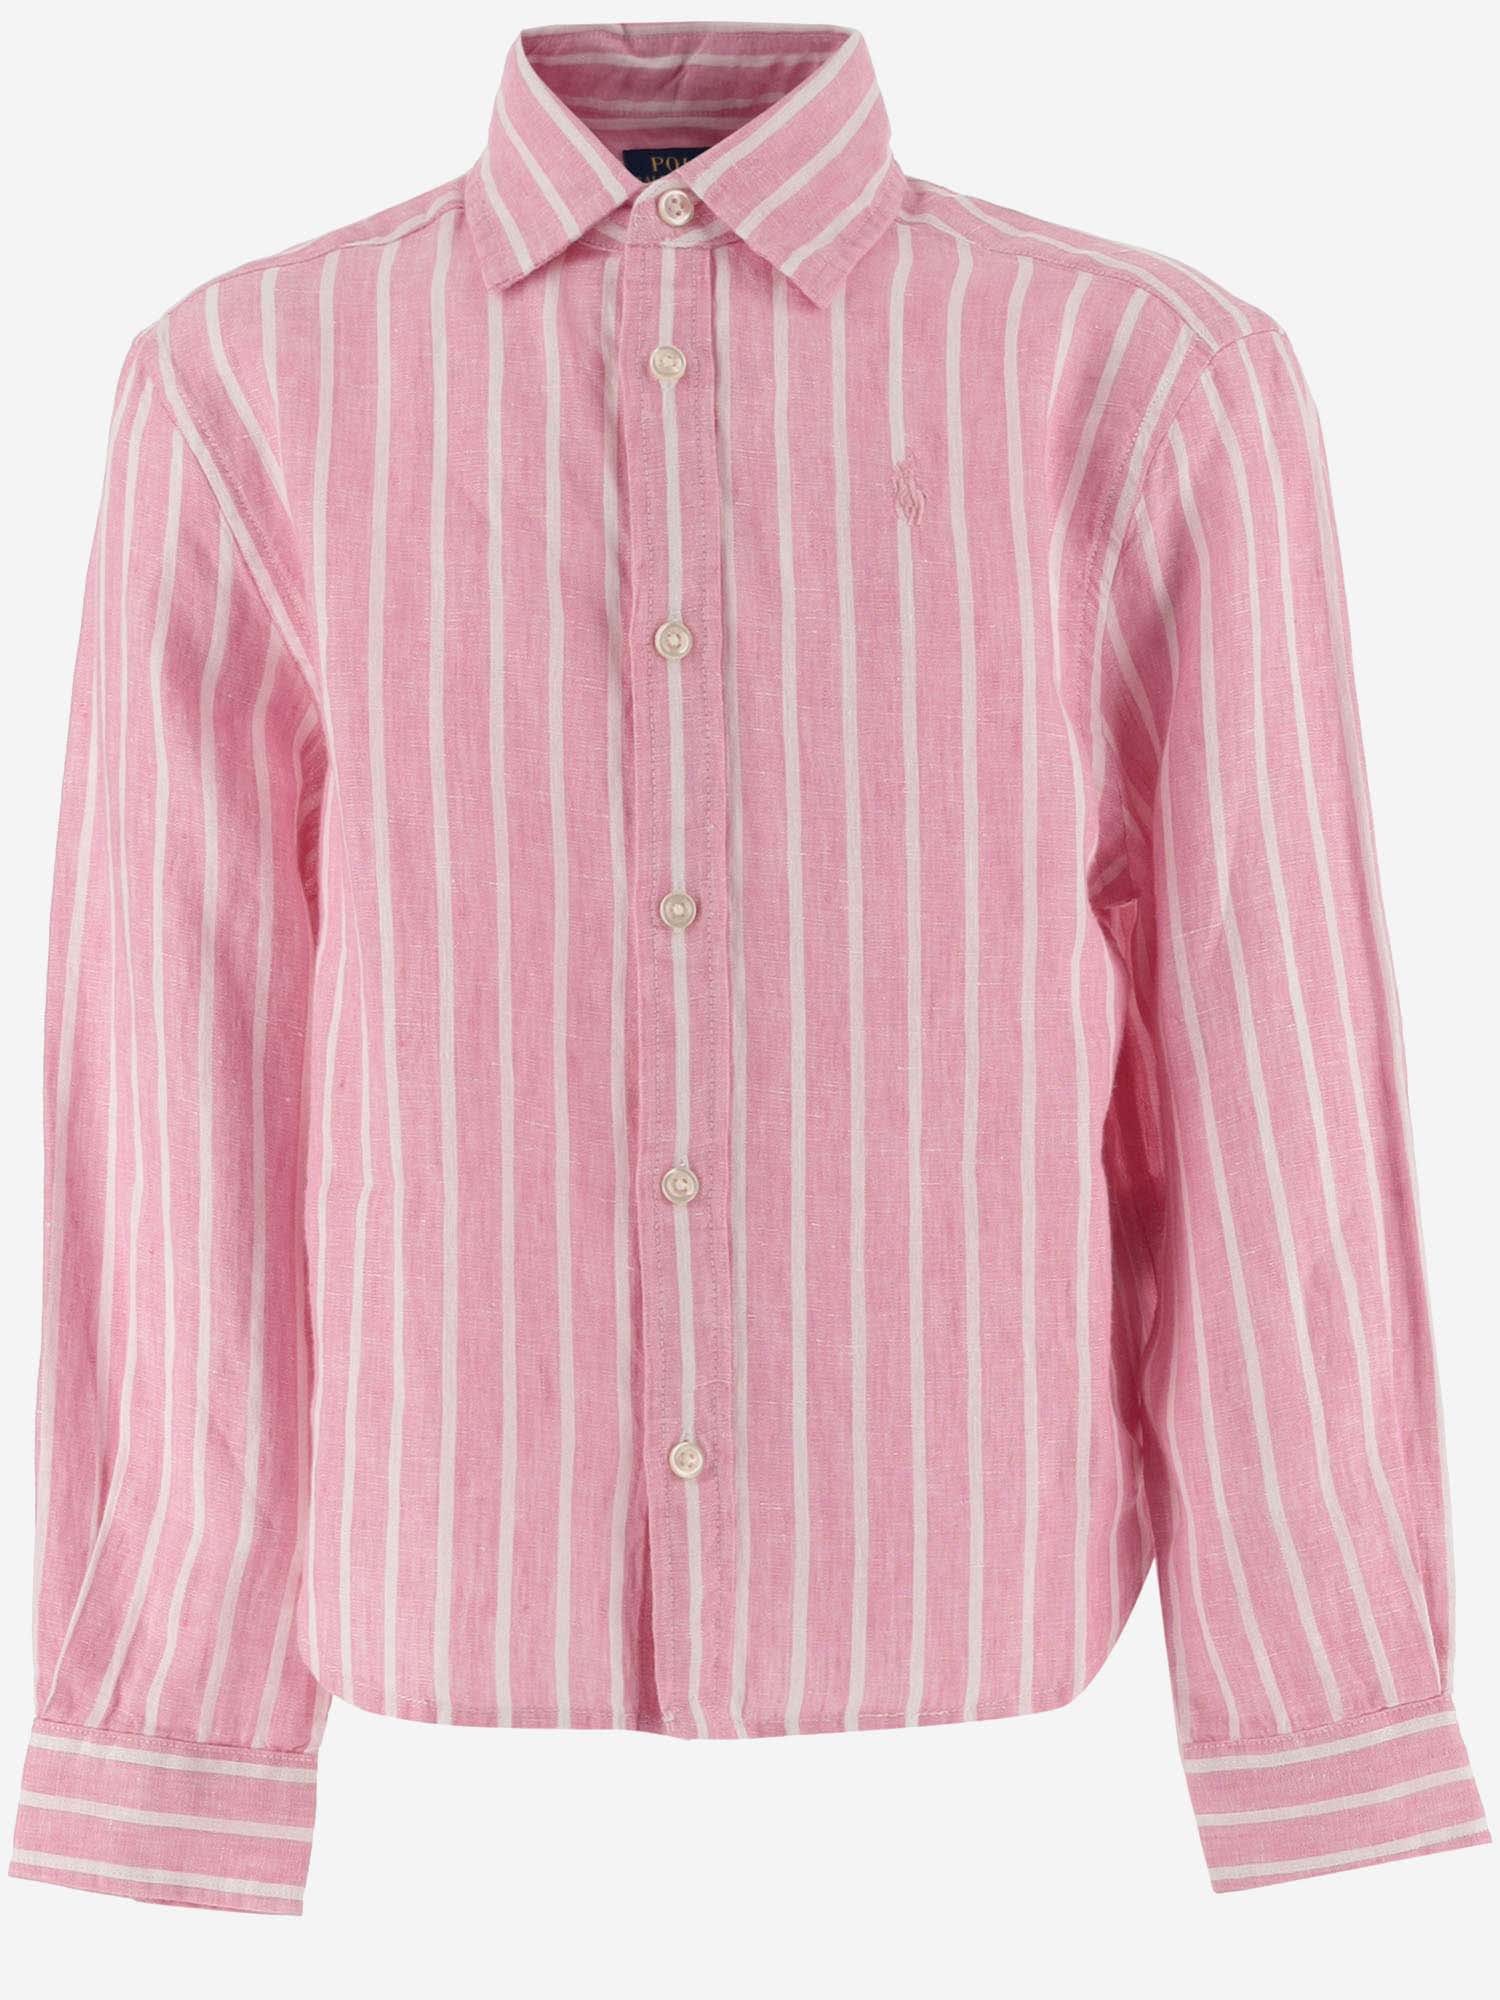 Ralph Lauren Kids' Linen Striped Shirt With Logo In Pink